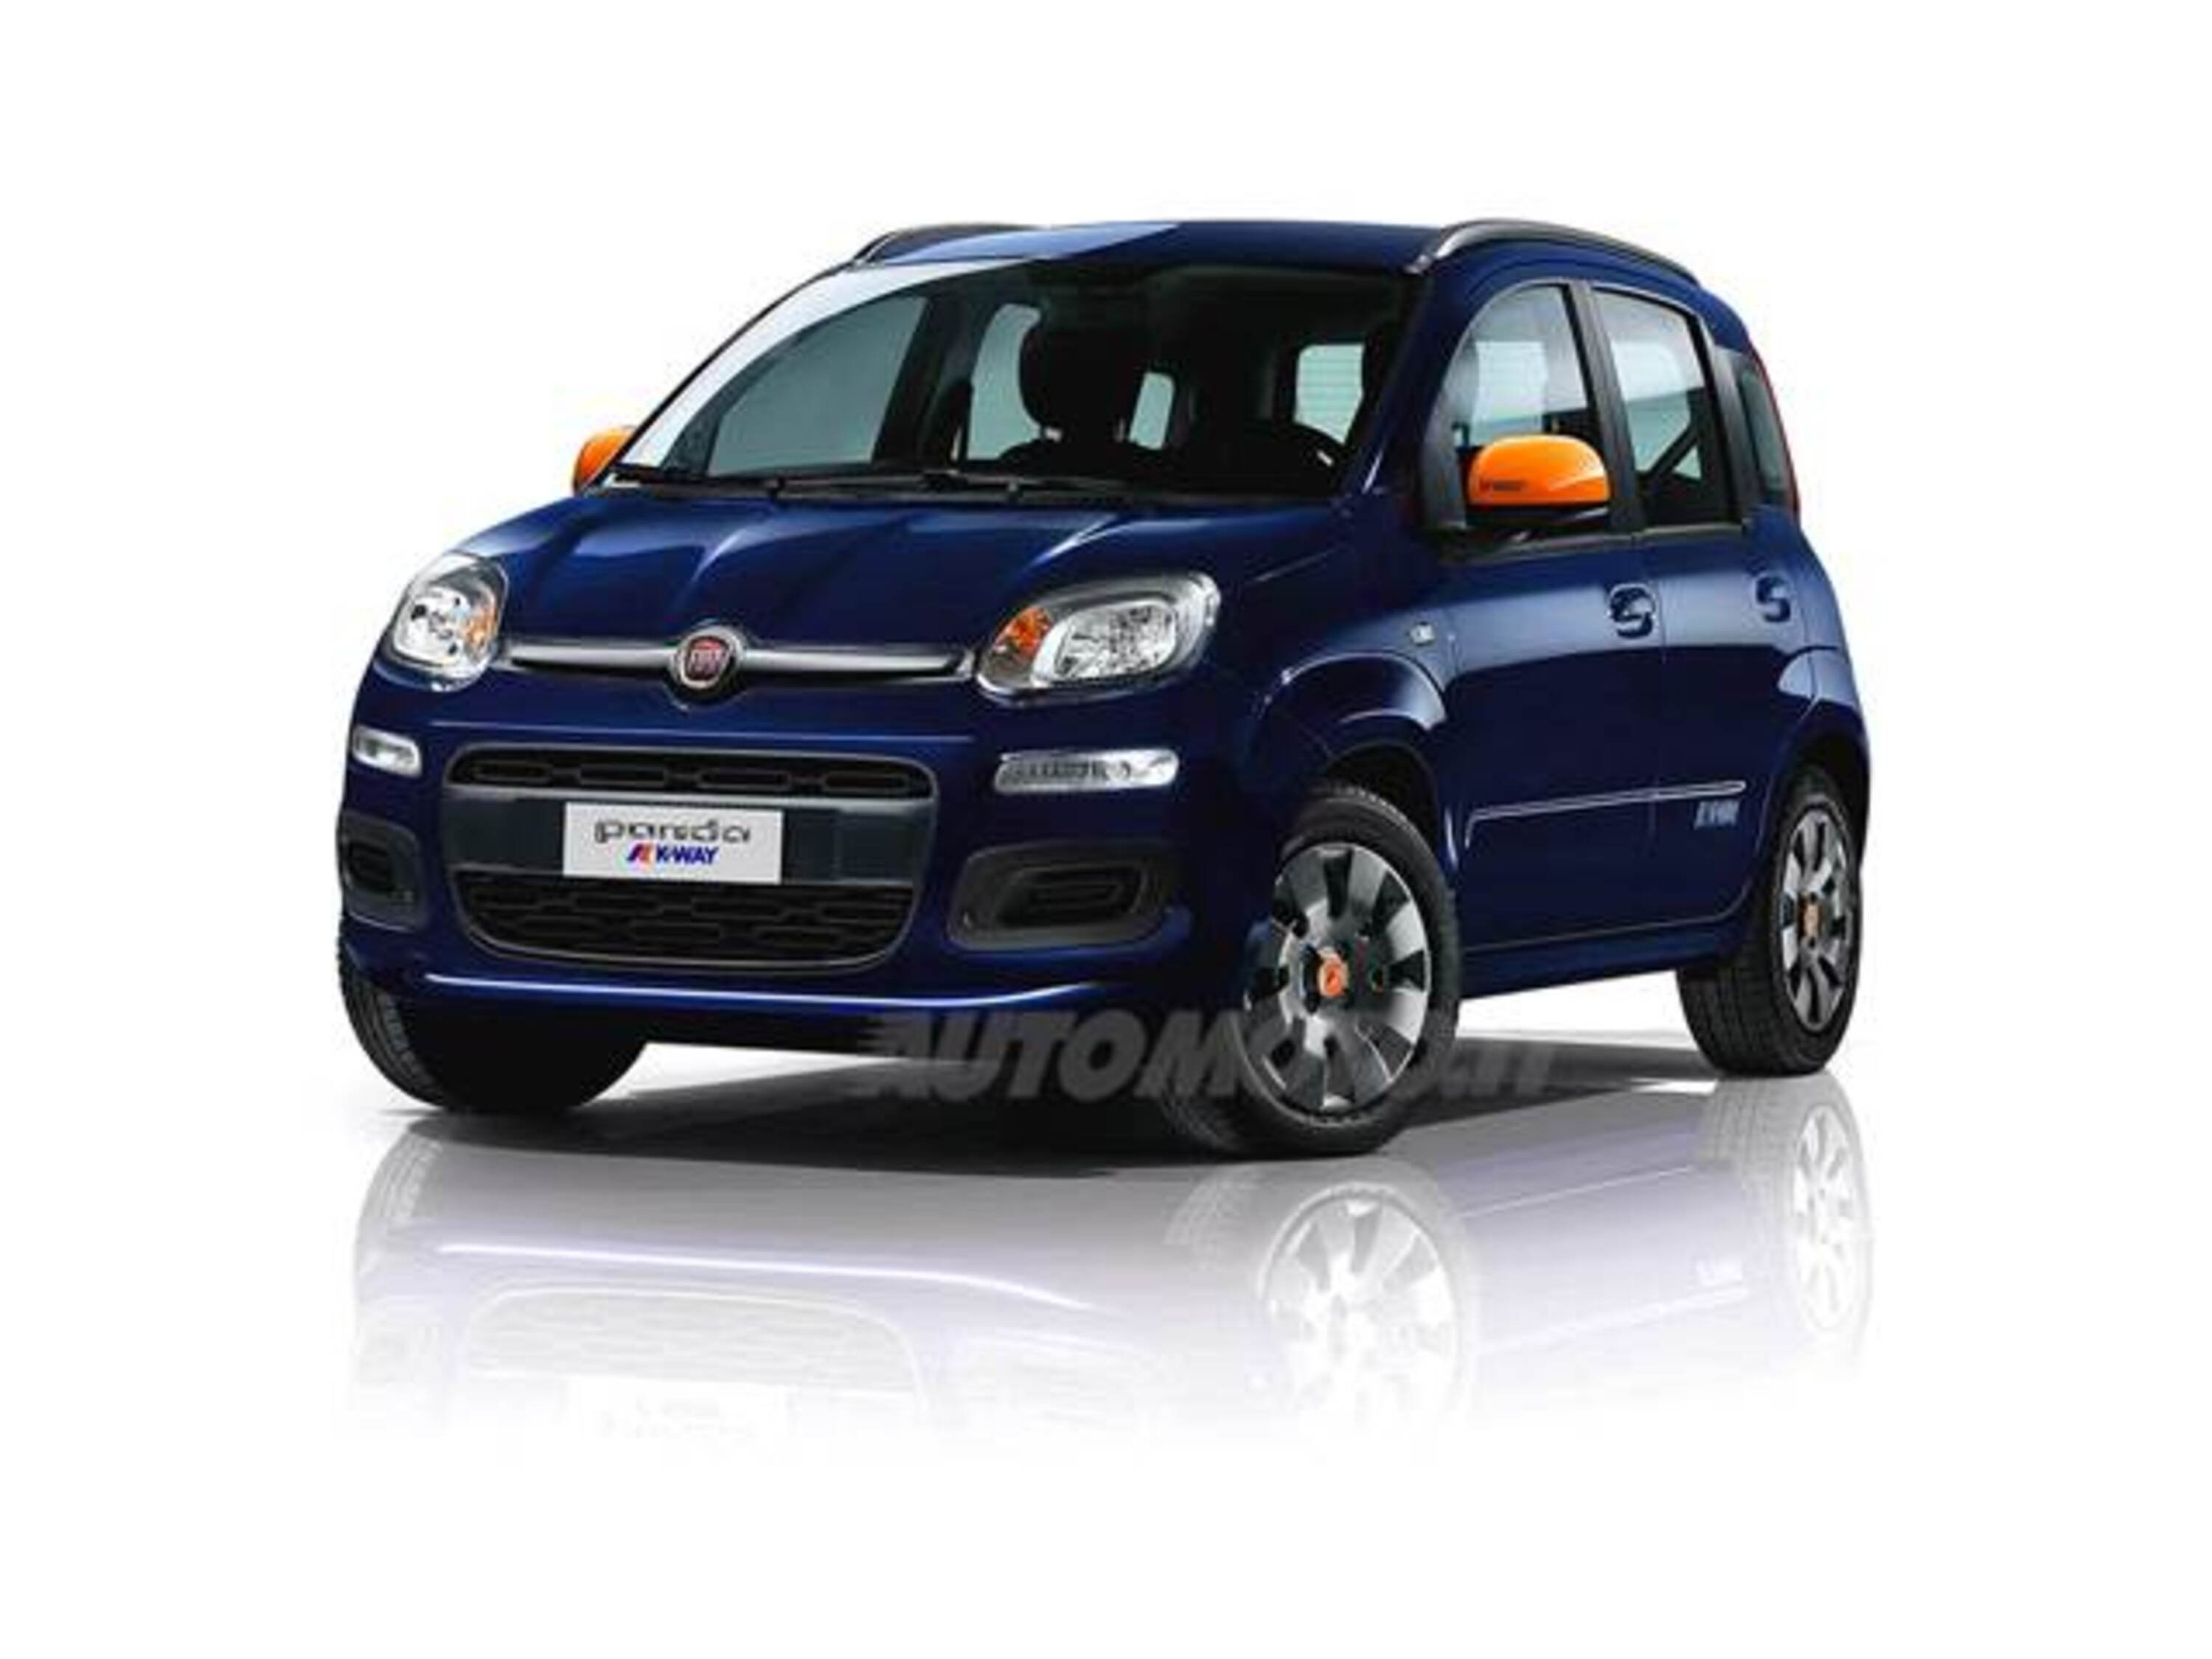 Fiat Panda 1.3 MJT 95 CV S&S K-Way